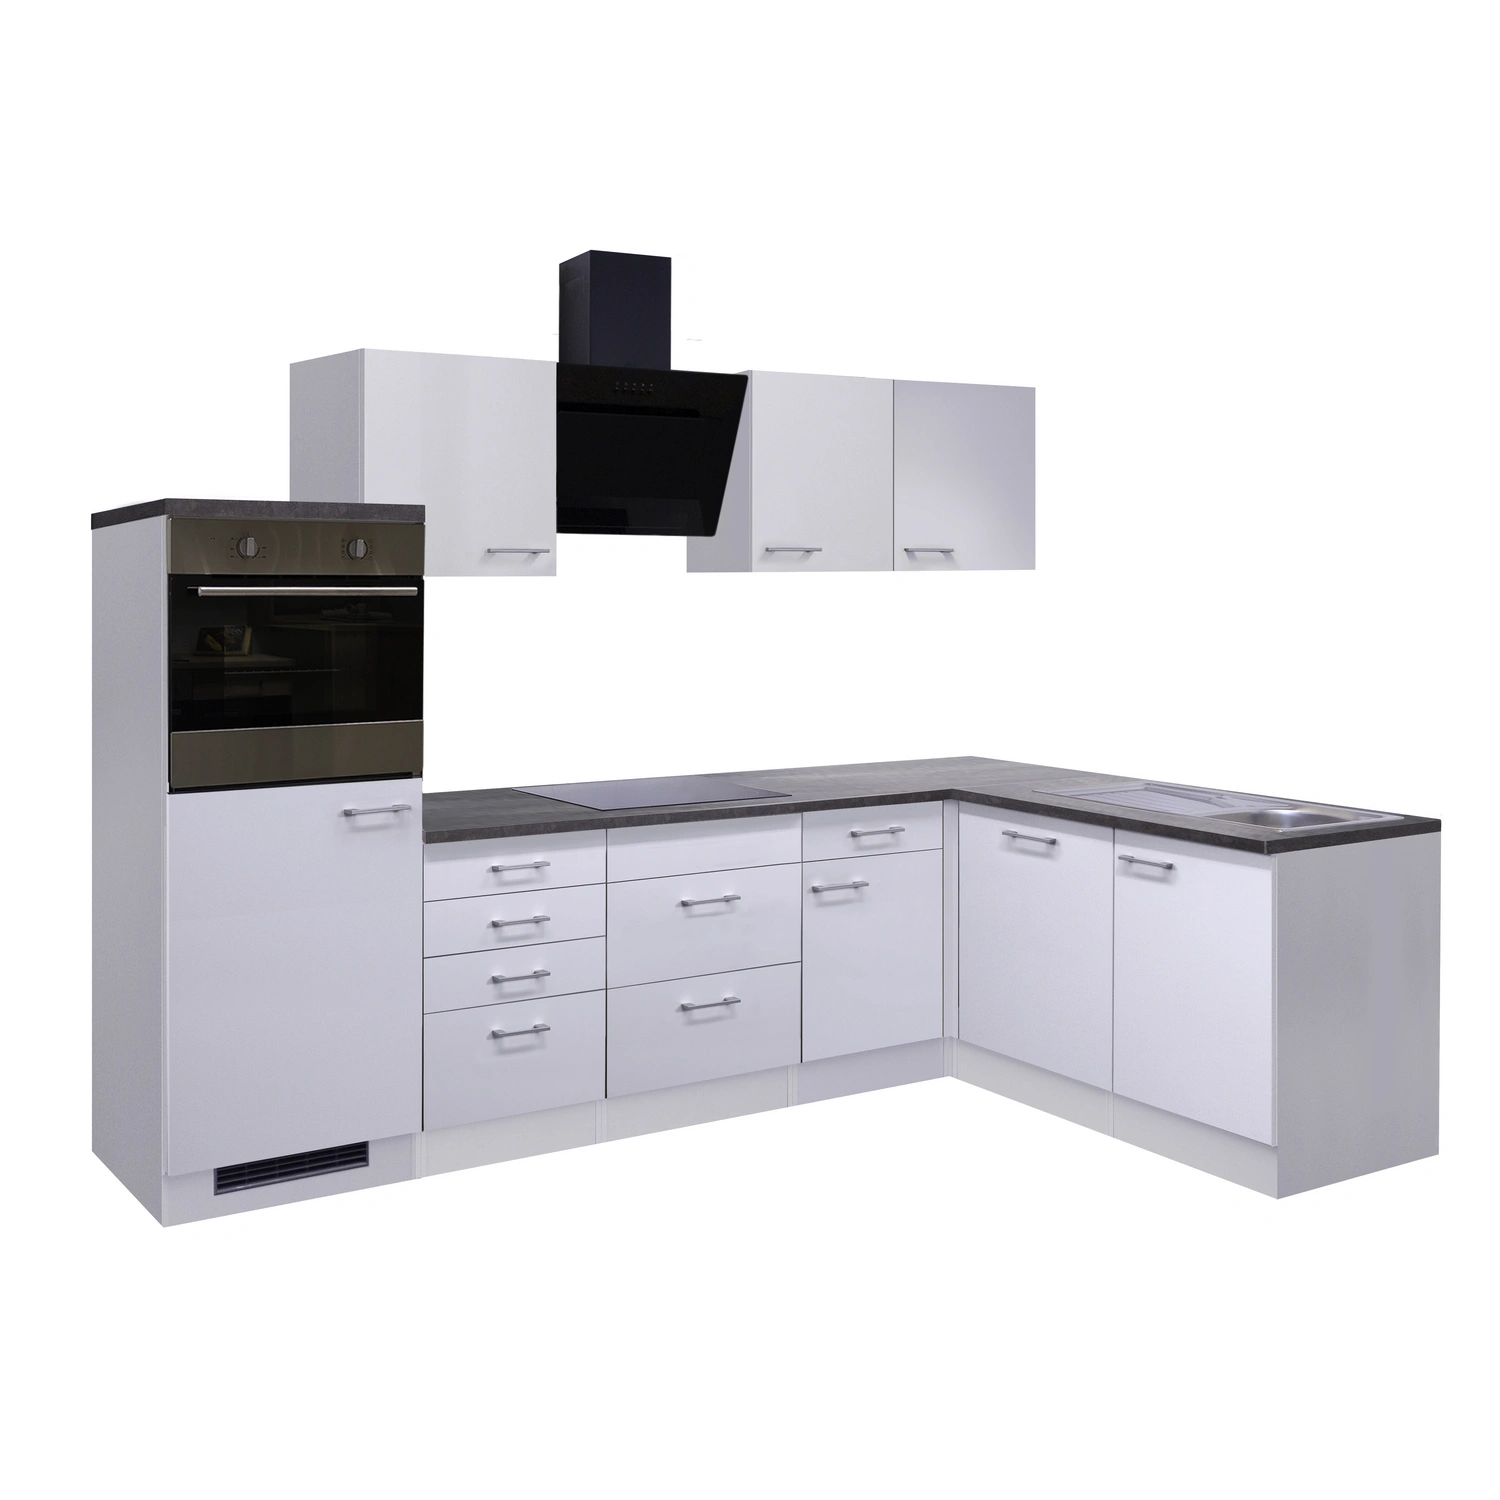 Flex-Well Winkelküche, mit E-Geräten, Gesamtbreite: 280 cm, Arbeitsplatte  mit Melaminharz-Beschichtung